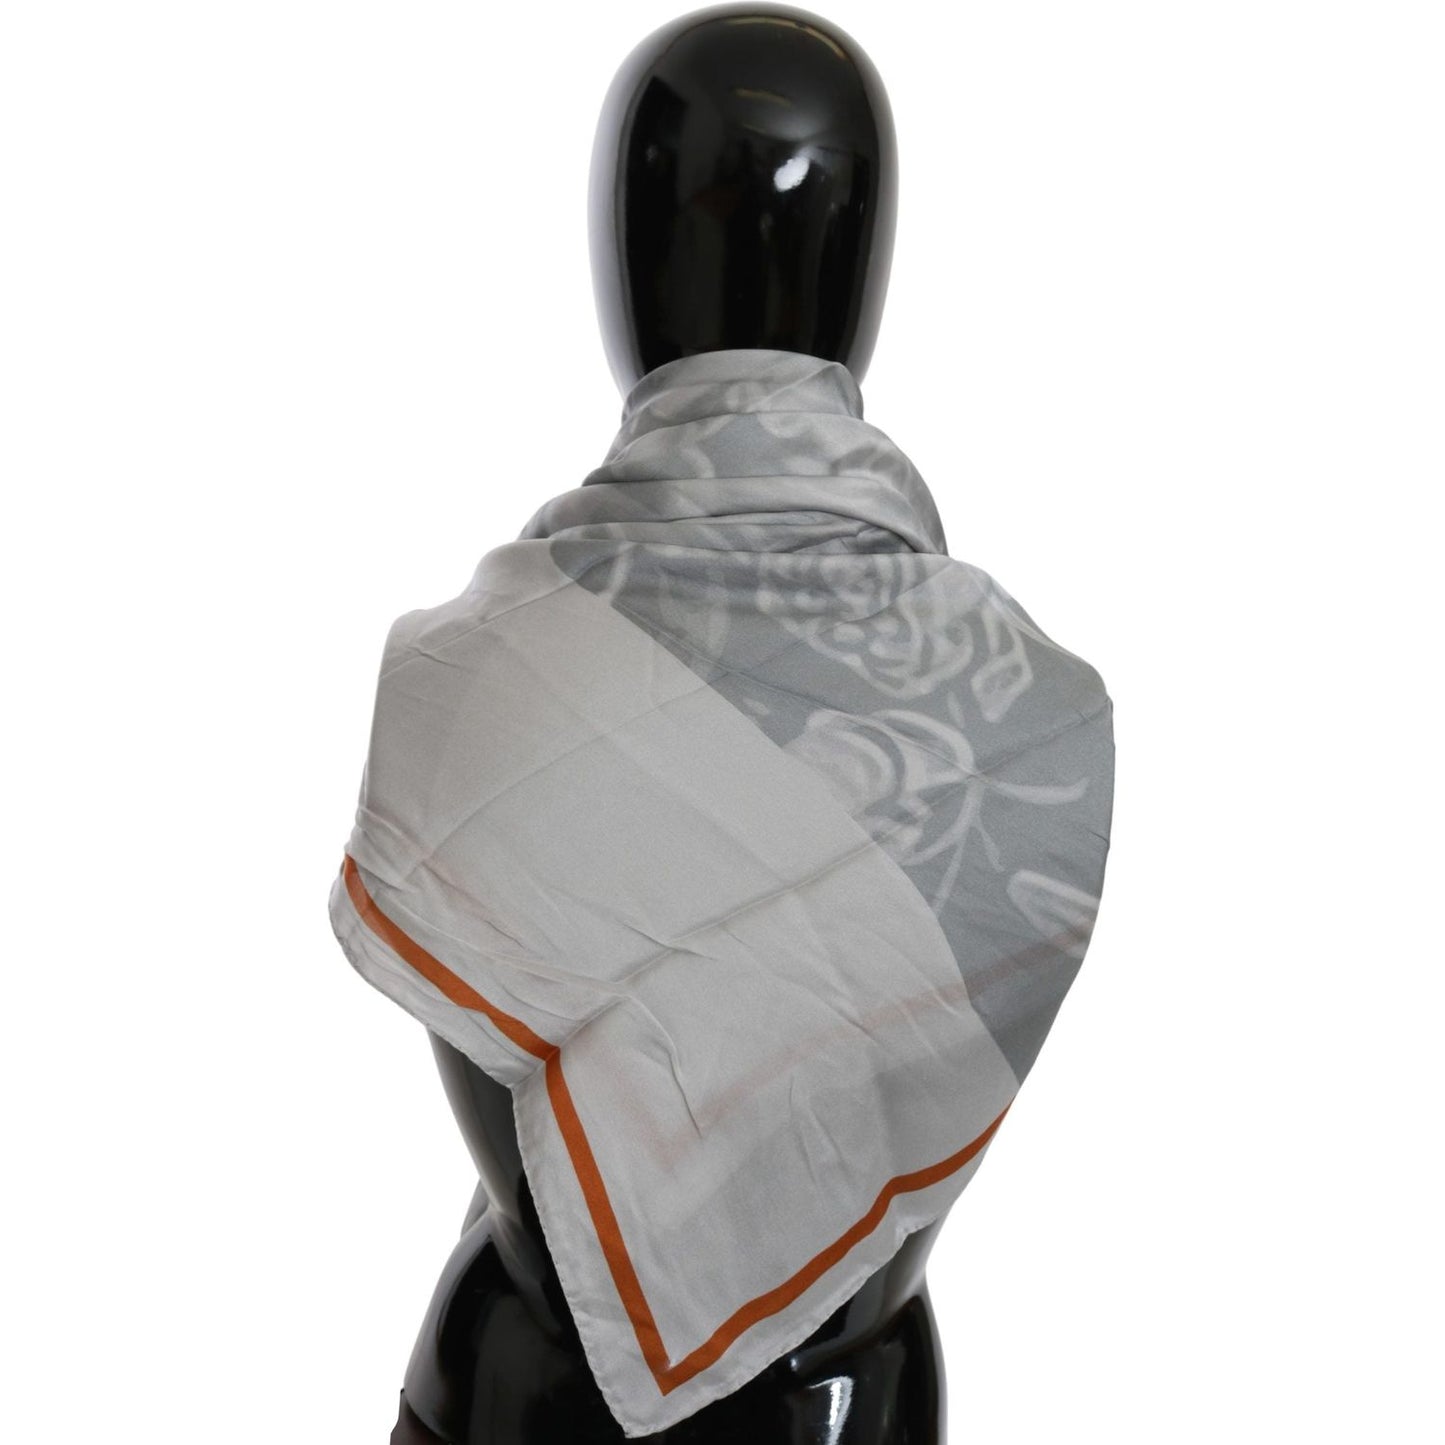 Costume National Elegant Floral Printed Silk Scarf gray-orange-silk-floral-foulard-wrap-scarf Silk Wrap Shawls IMG_0295-scaled-189d428c-6fb.jpg